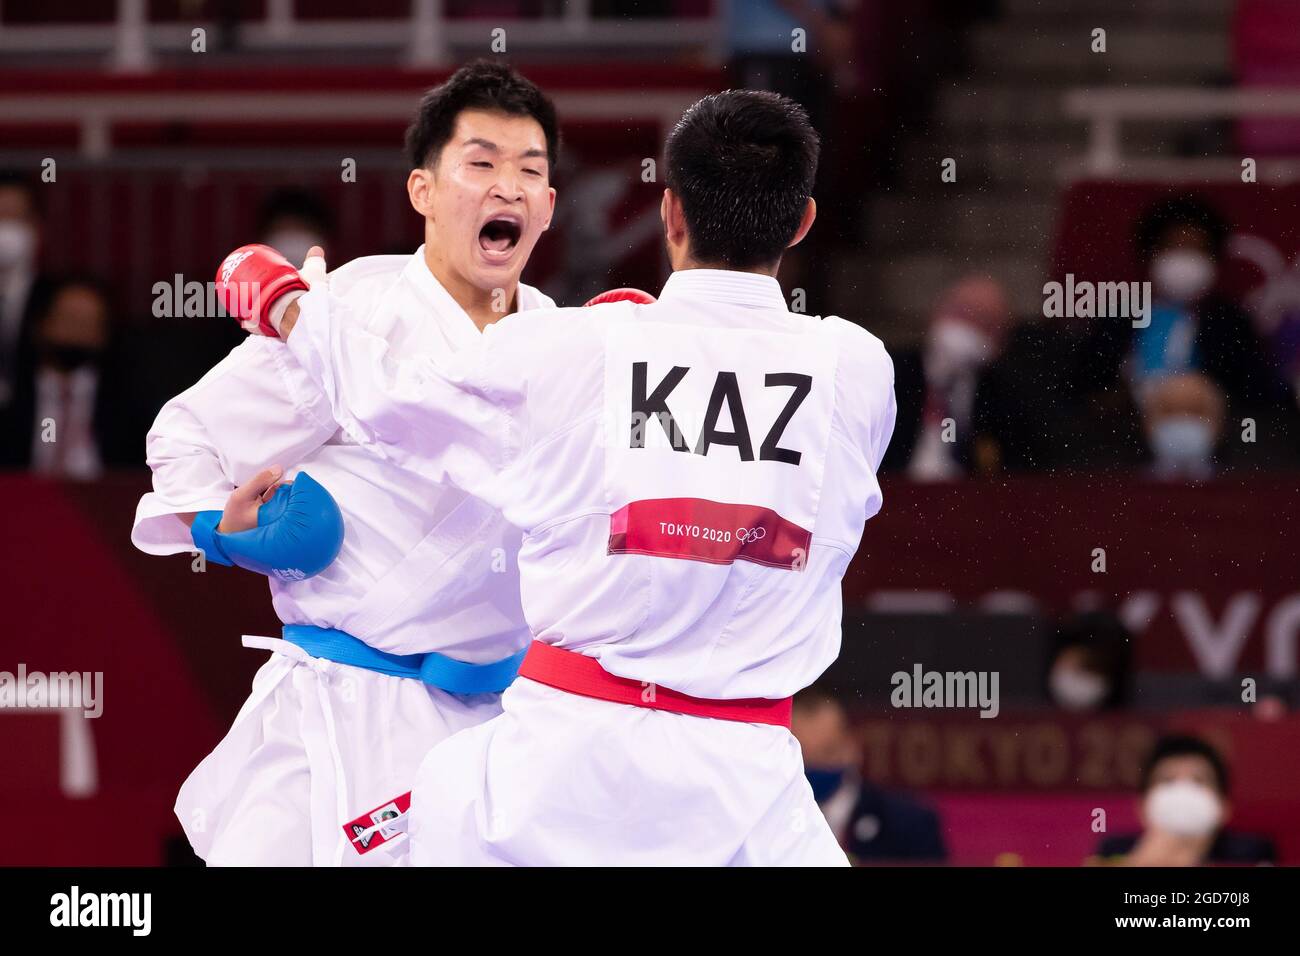 07. August 2021: Ryutaro Araga aus Japan kämpft während der Olympischen Spiele 2020 in Tokio gegen Daniyar Yuldaschev aus Kasachstan im Nippon Budokan in Tokio, Japan. Daniel Lea/CSM} Stockfoto